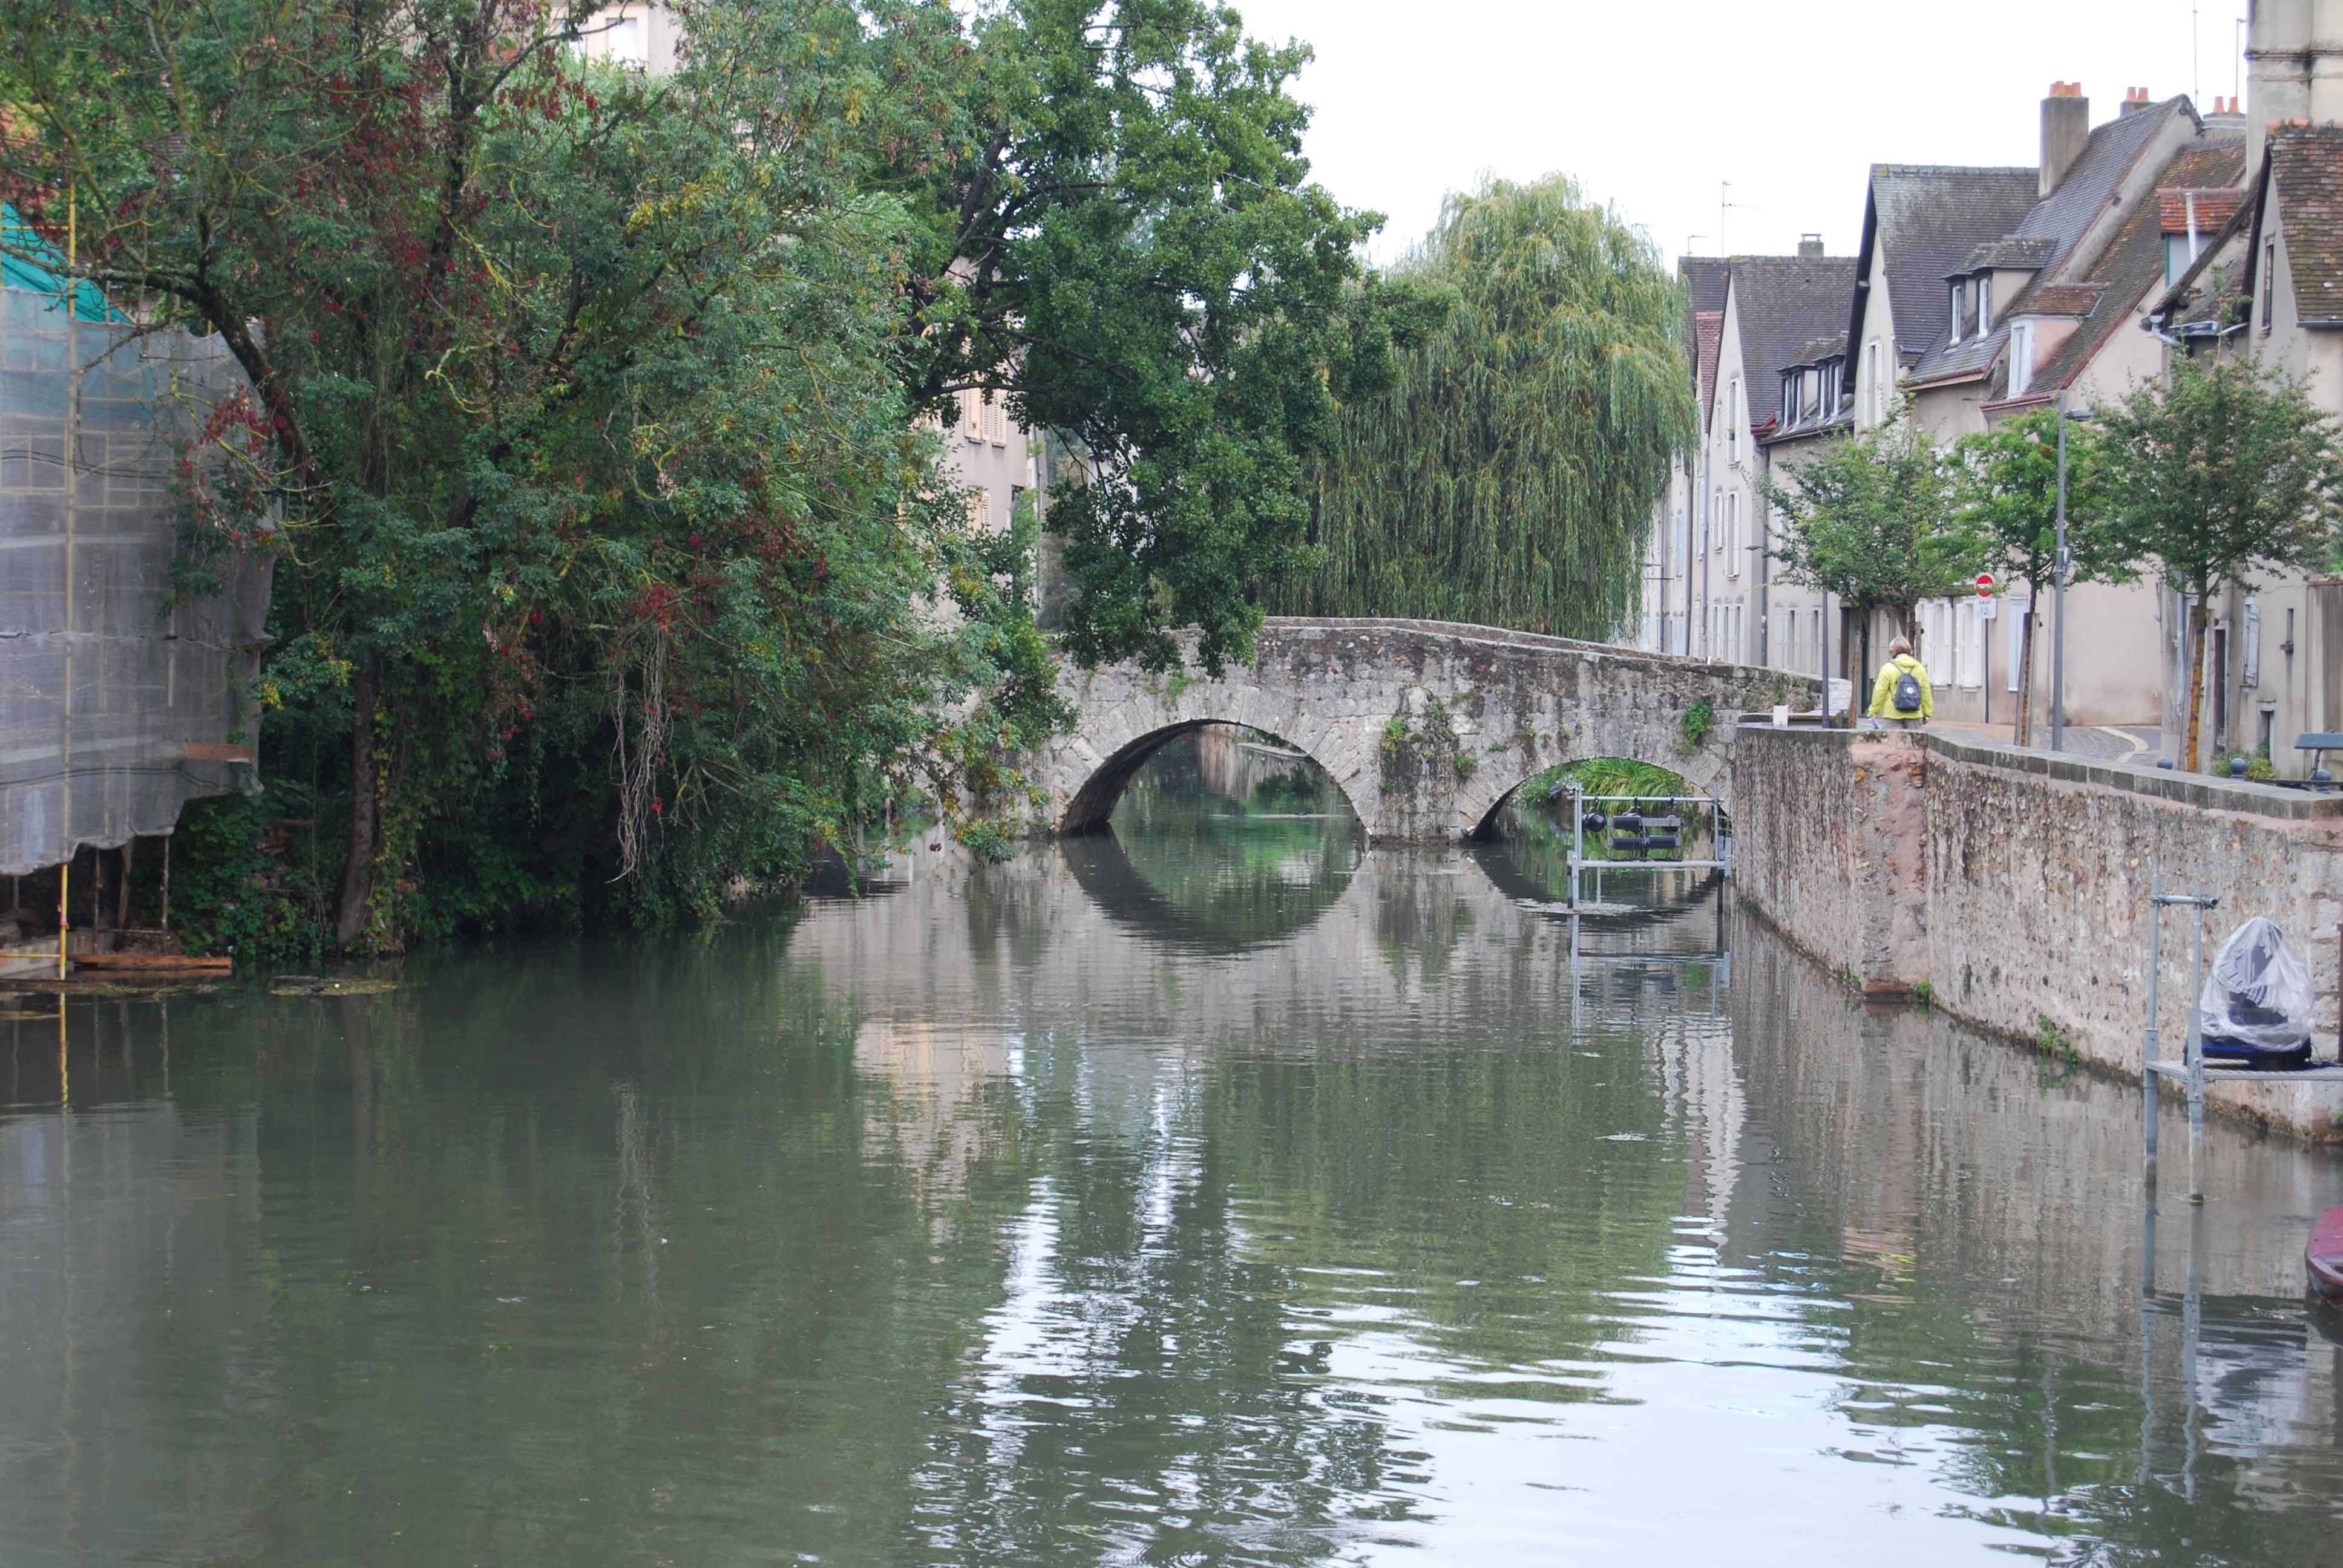 Un paseo por Chartres. Arte y Paisaje - Chartres: Arte, espiritualidad y esoterismo. (3)